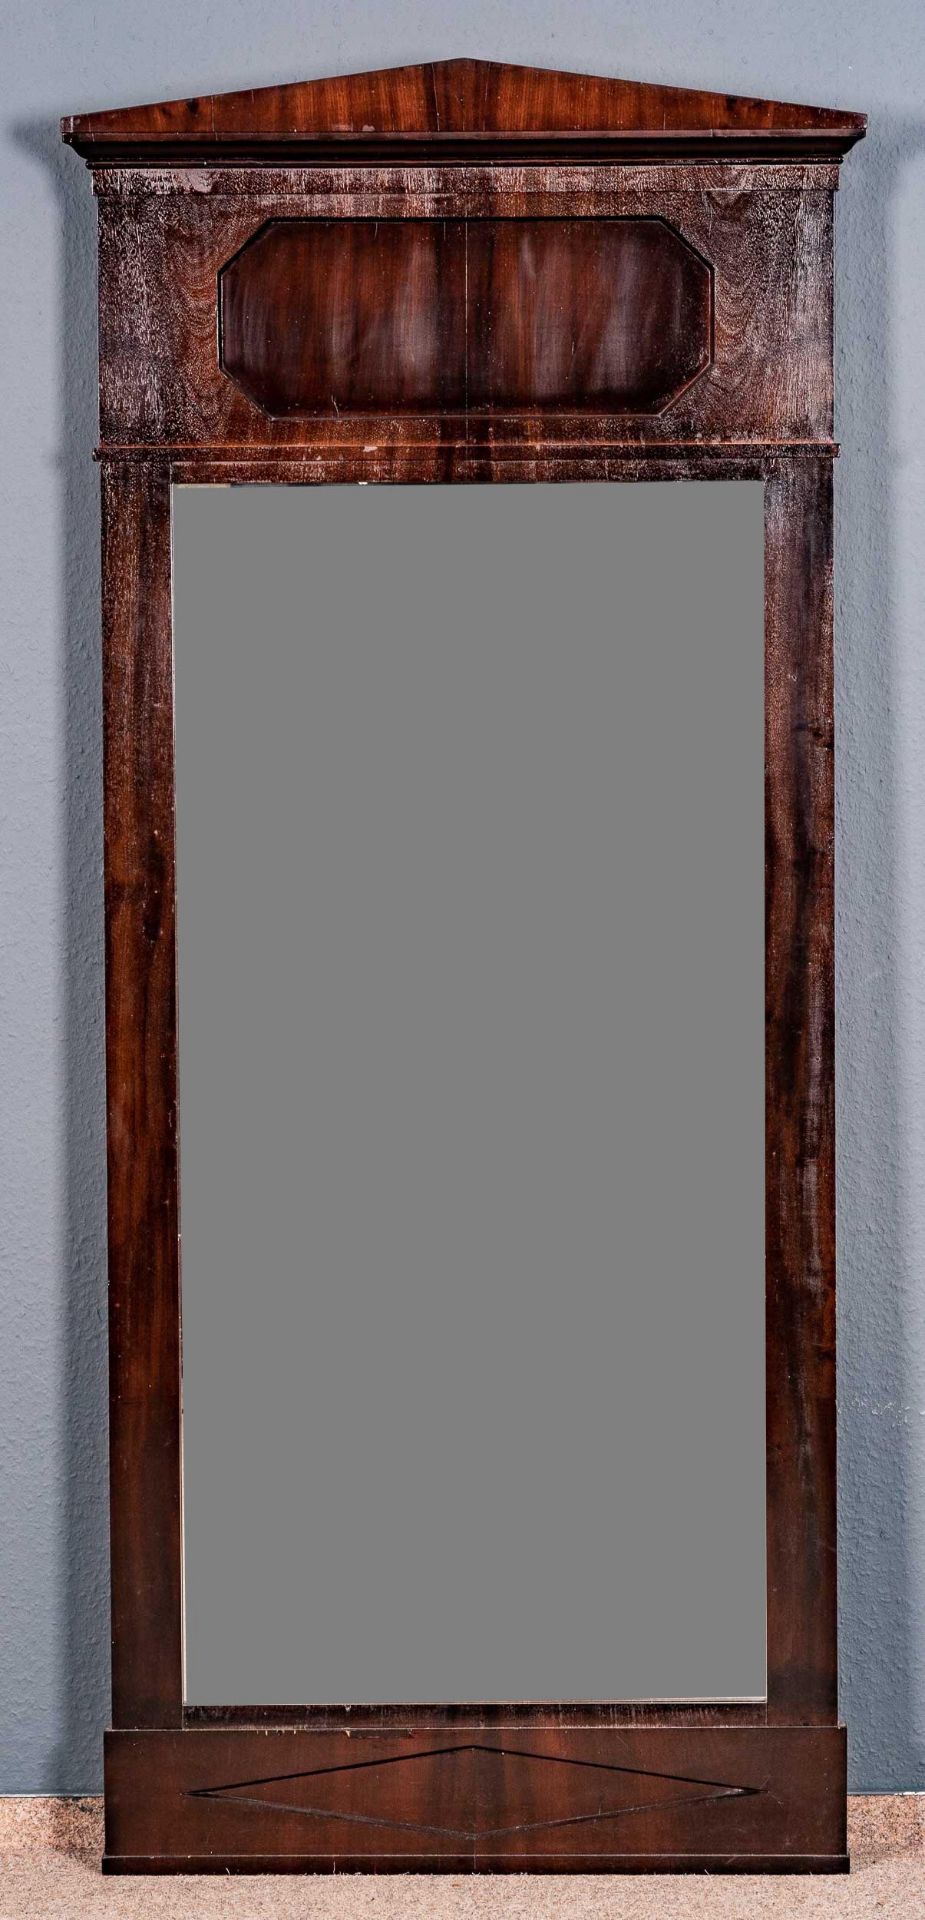 Großer Spiegel, Mahagoni massiv & furniert, Nadelholzkorpus, norddeutsches Biedermeier um 1830. Unr